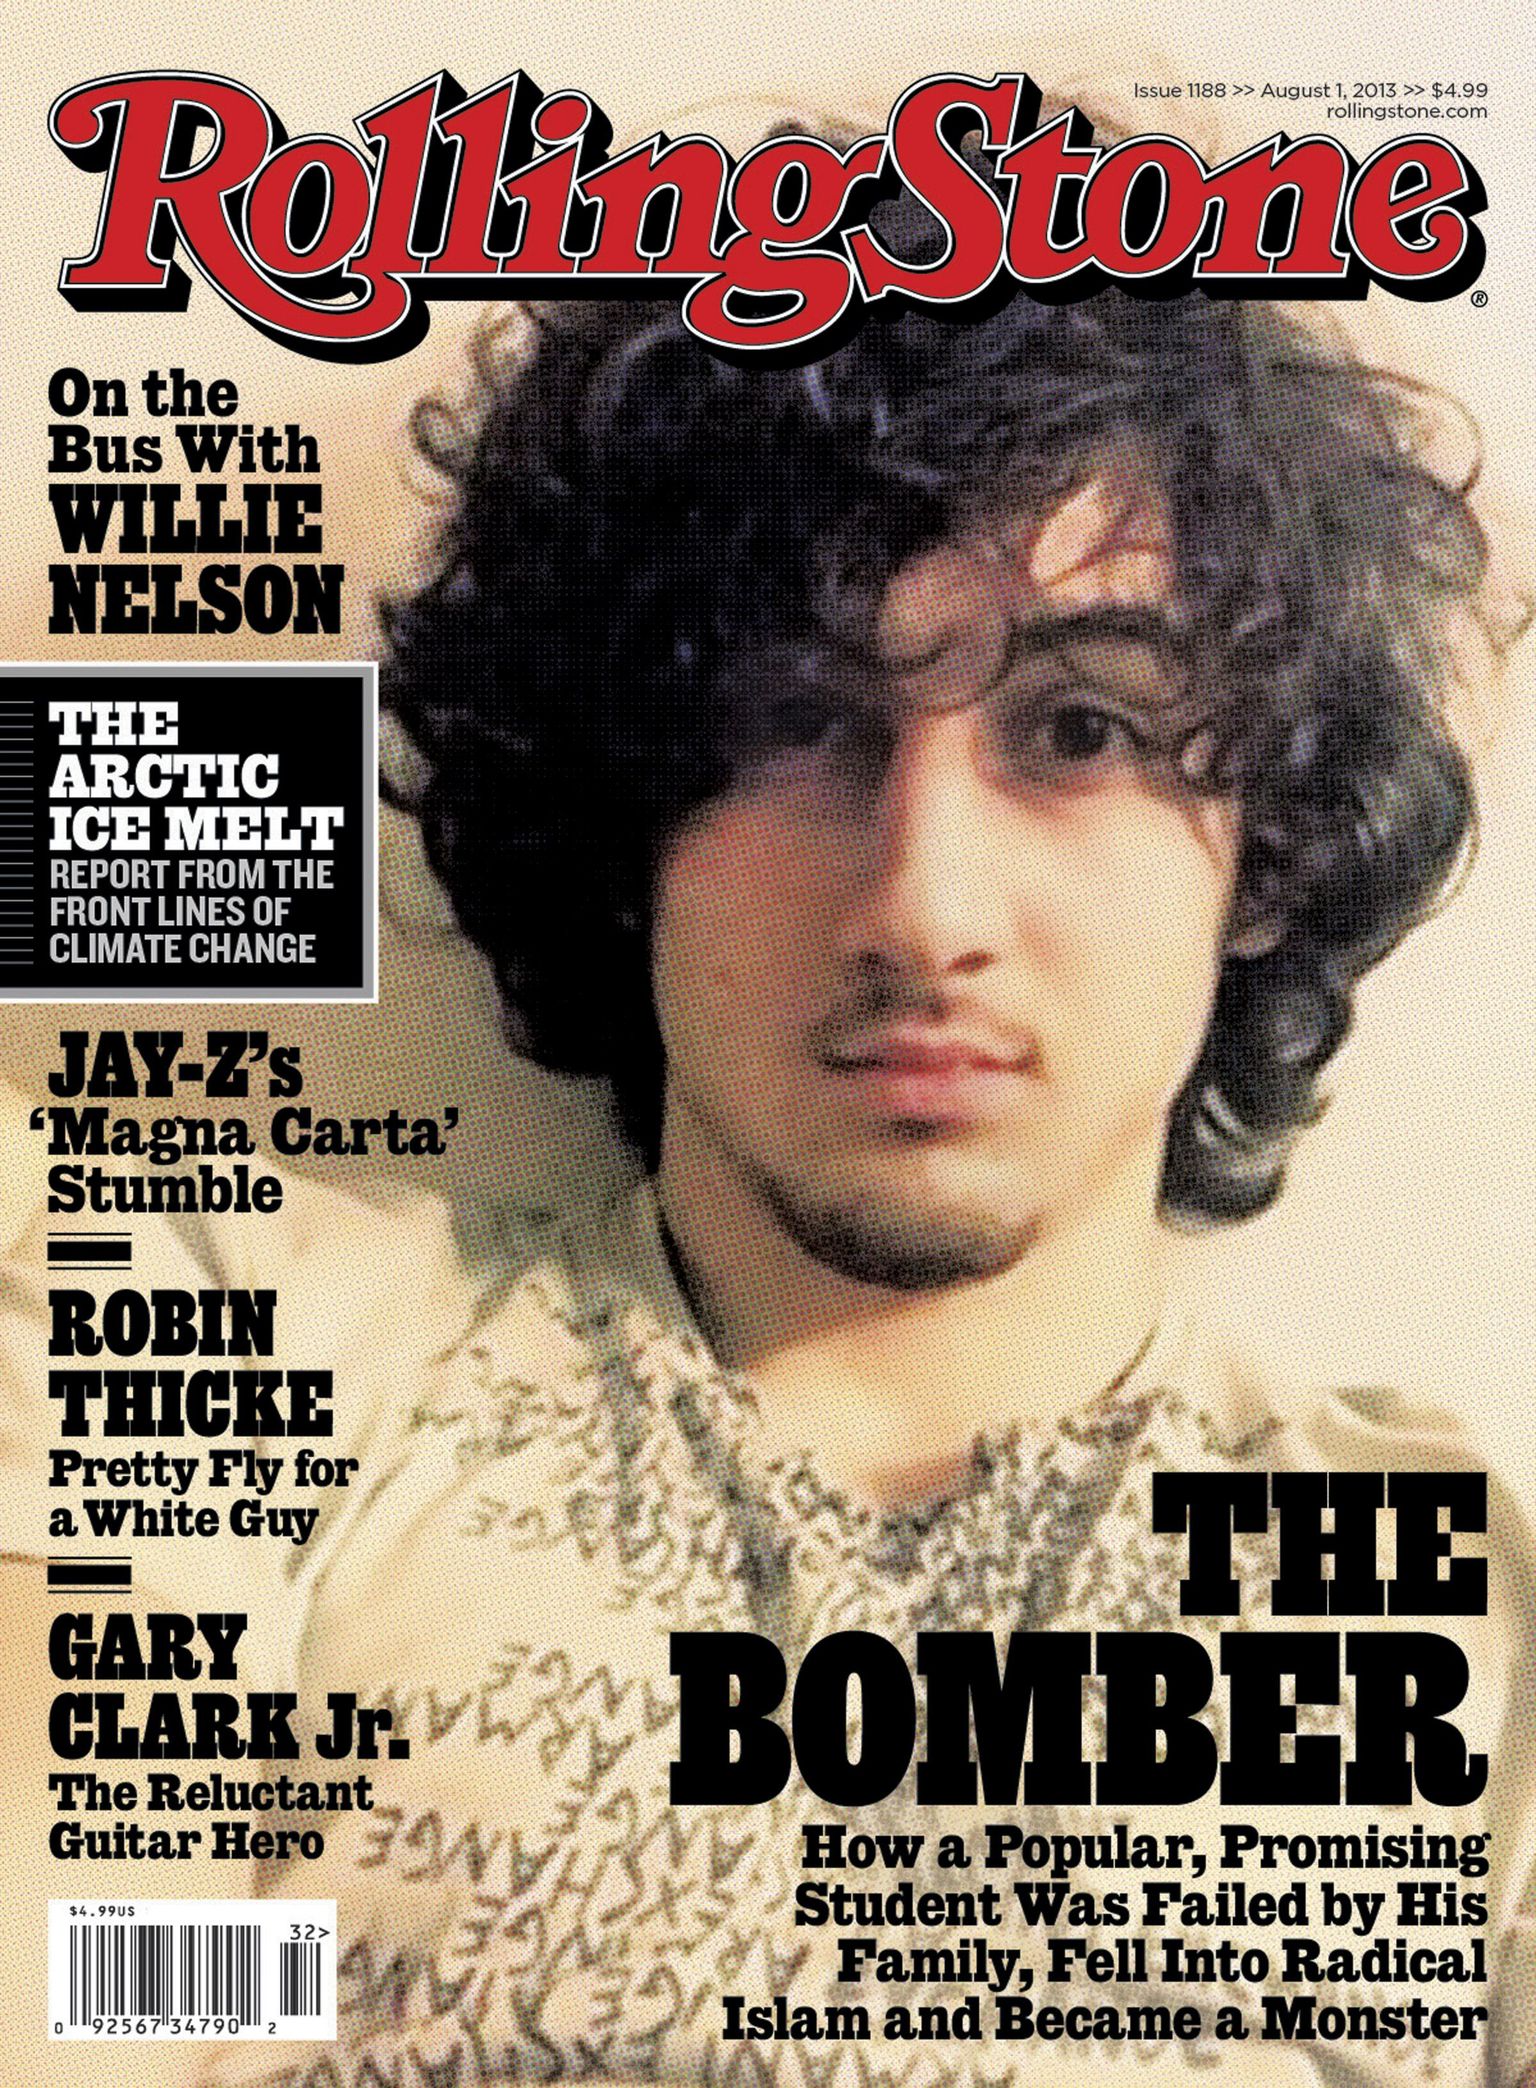 Bostoni pommirünnakutes süüdistatavast Džohhar Tsarnajevitst avaldas pika loo ka ajakiri Rolling Stones, mis püüdis lahata pealtnäha tavalise teismelise radikaliseerumisprotsessi.